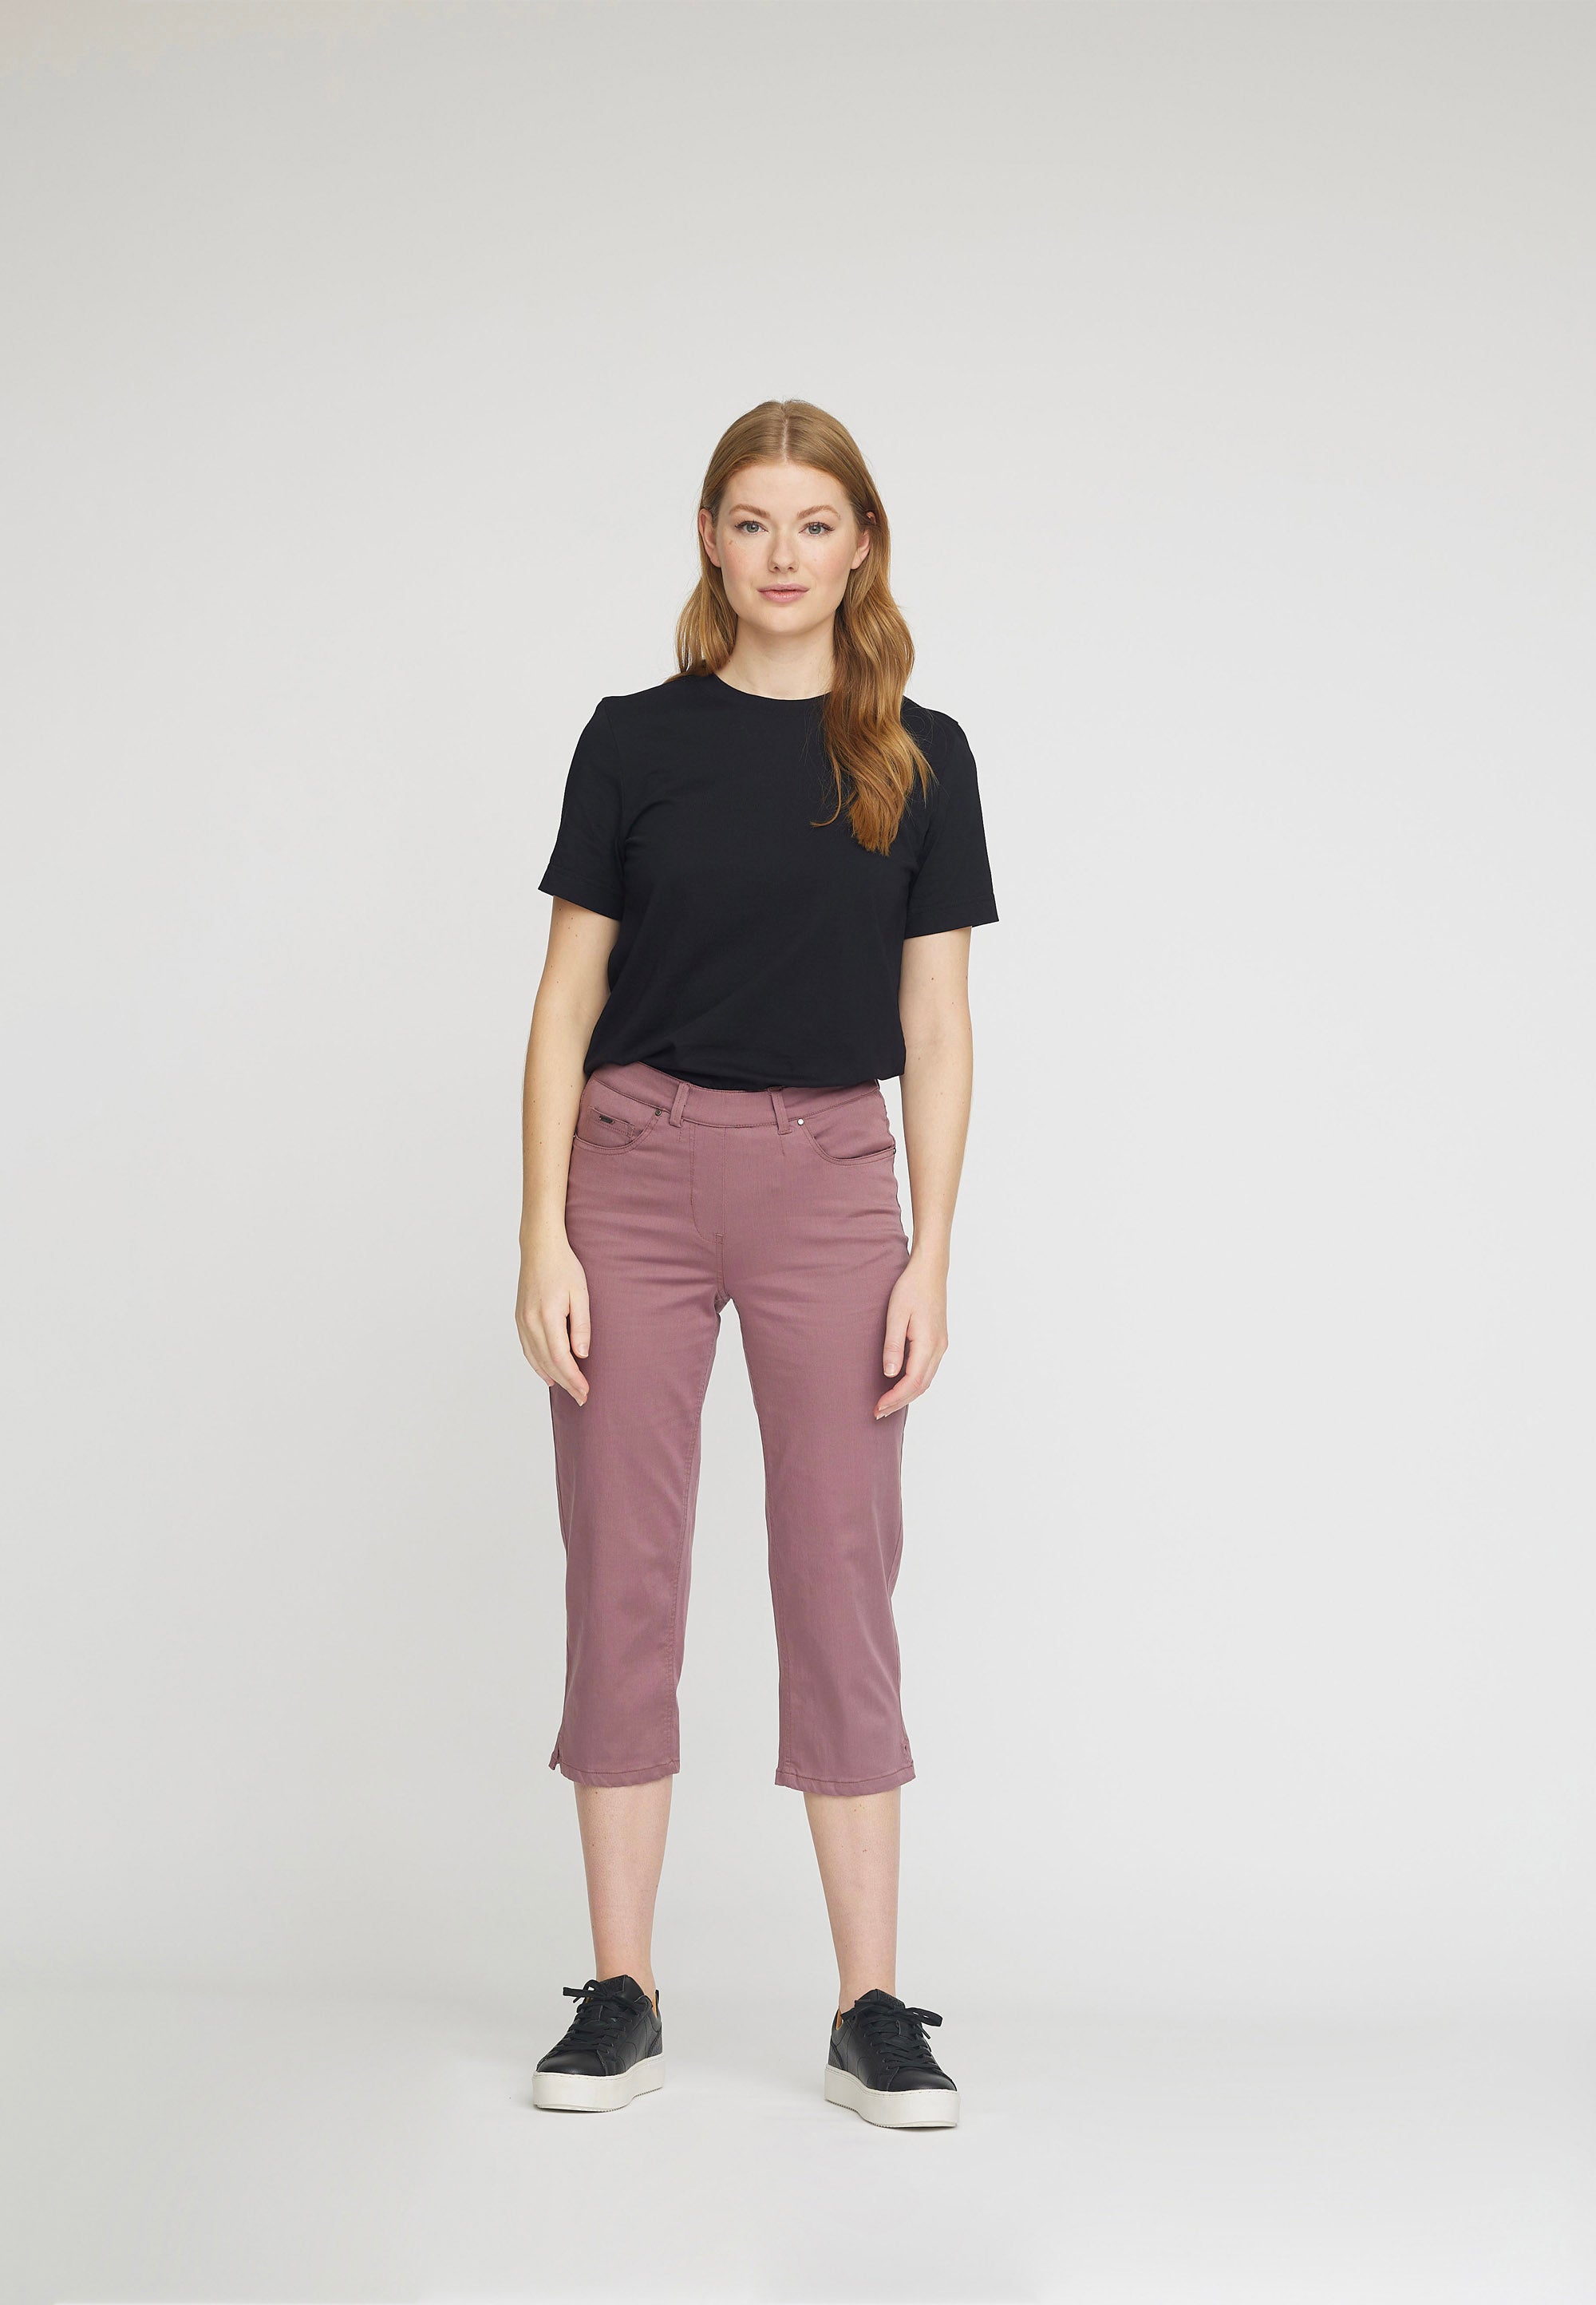 LAURIE  Hannah Regular Capri Medium Length Trousers REGULAR 32000 Faded Grape